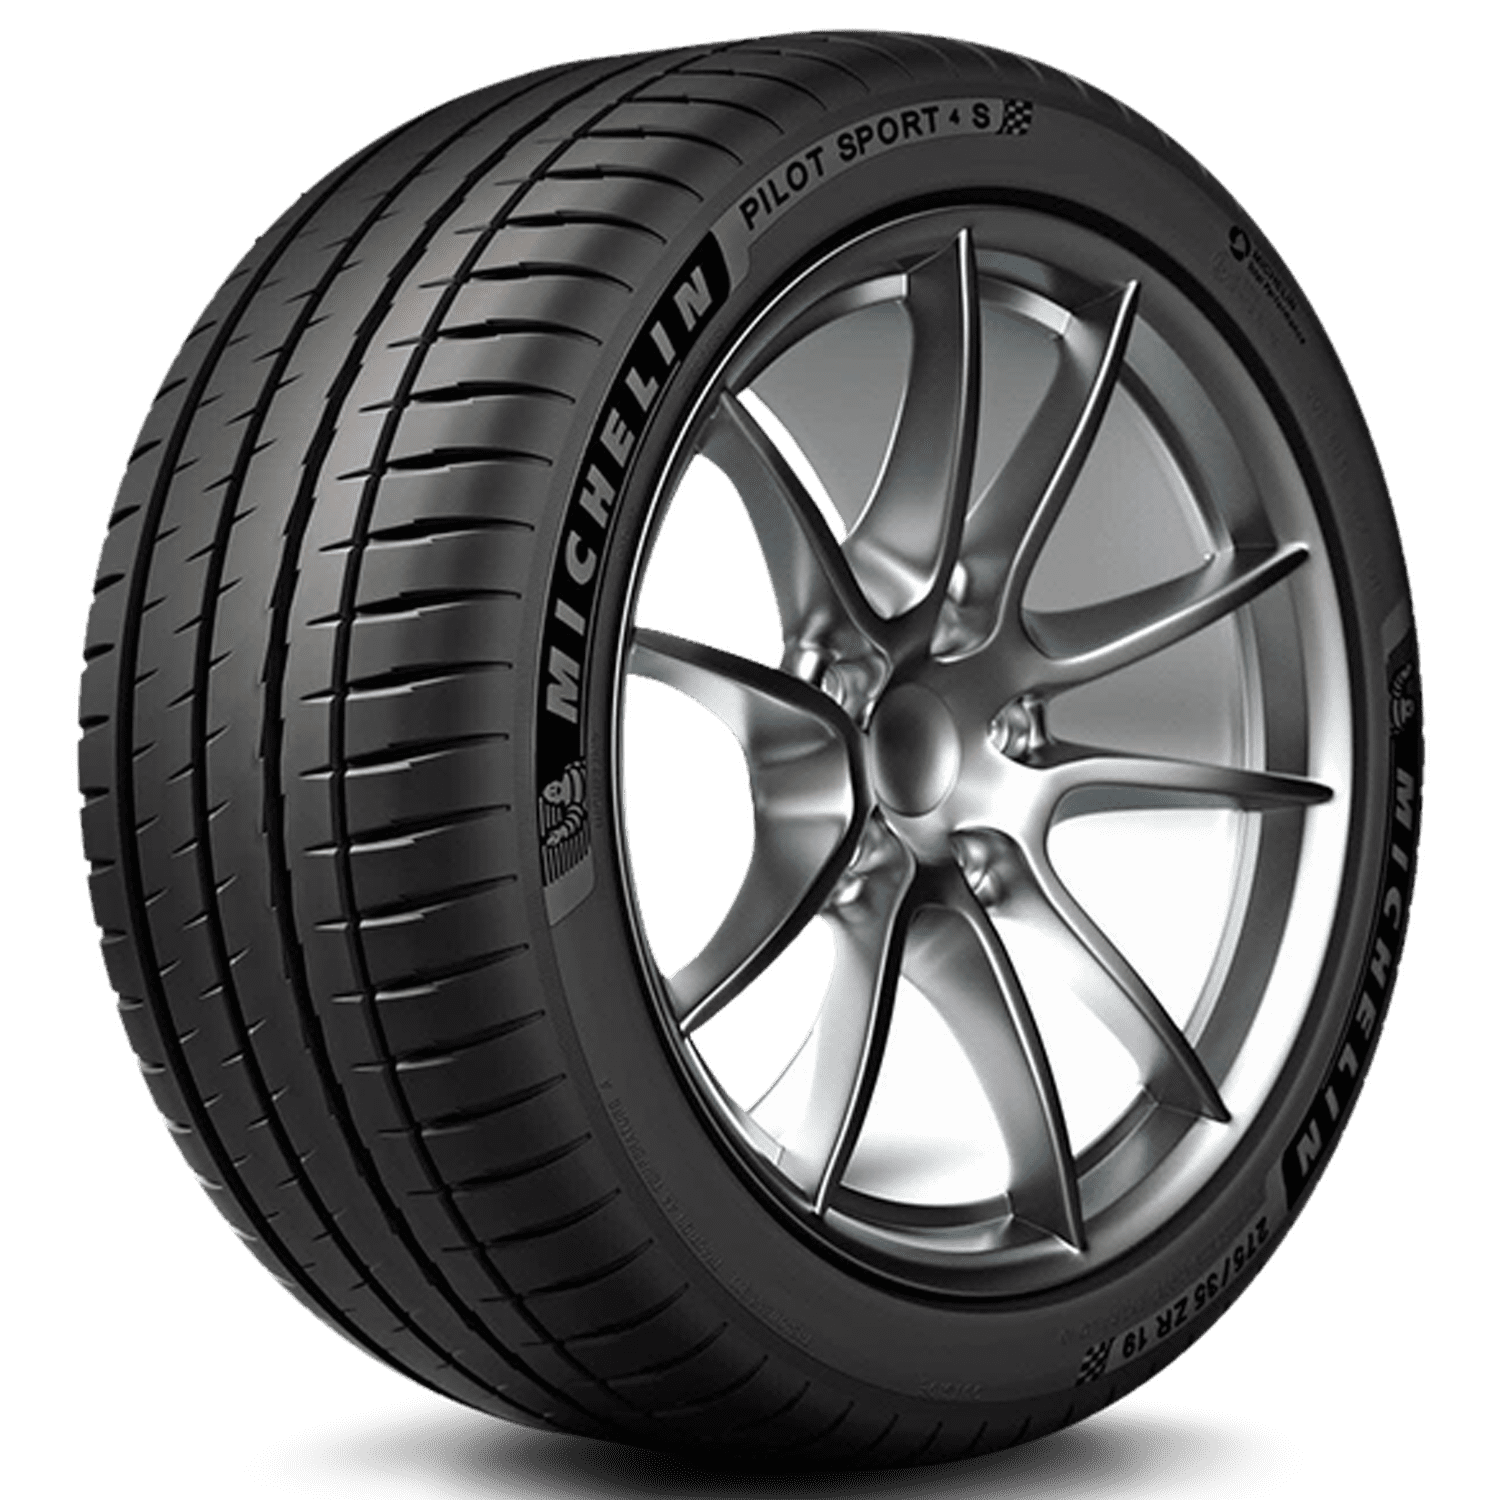 Michelin Pilot Sport 4 S 215/45-17 Tire 91 Y